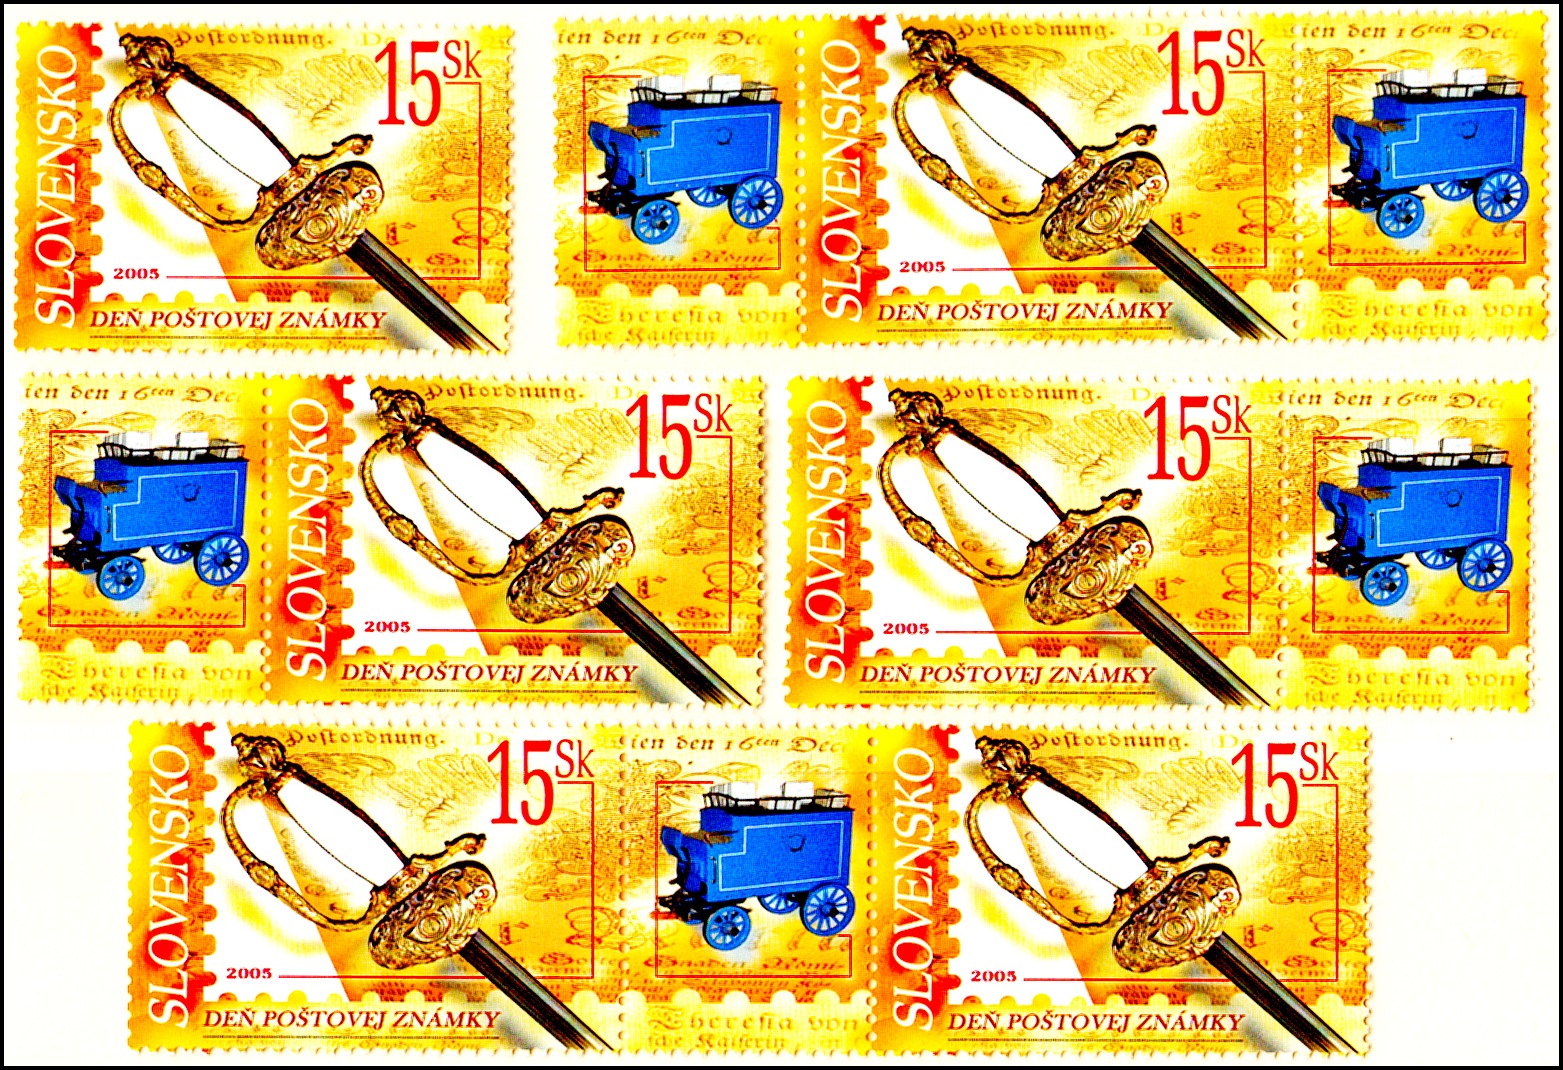 Den poštovní známky 2005 (kombinace 6 zn.+ 5 K)